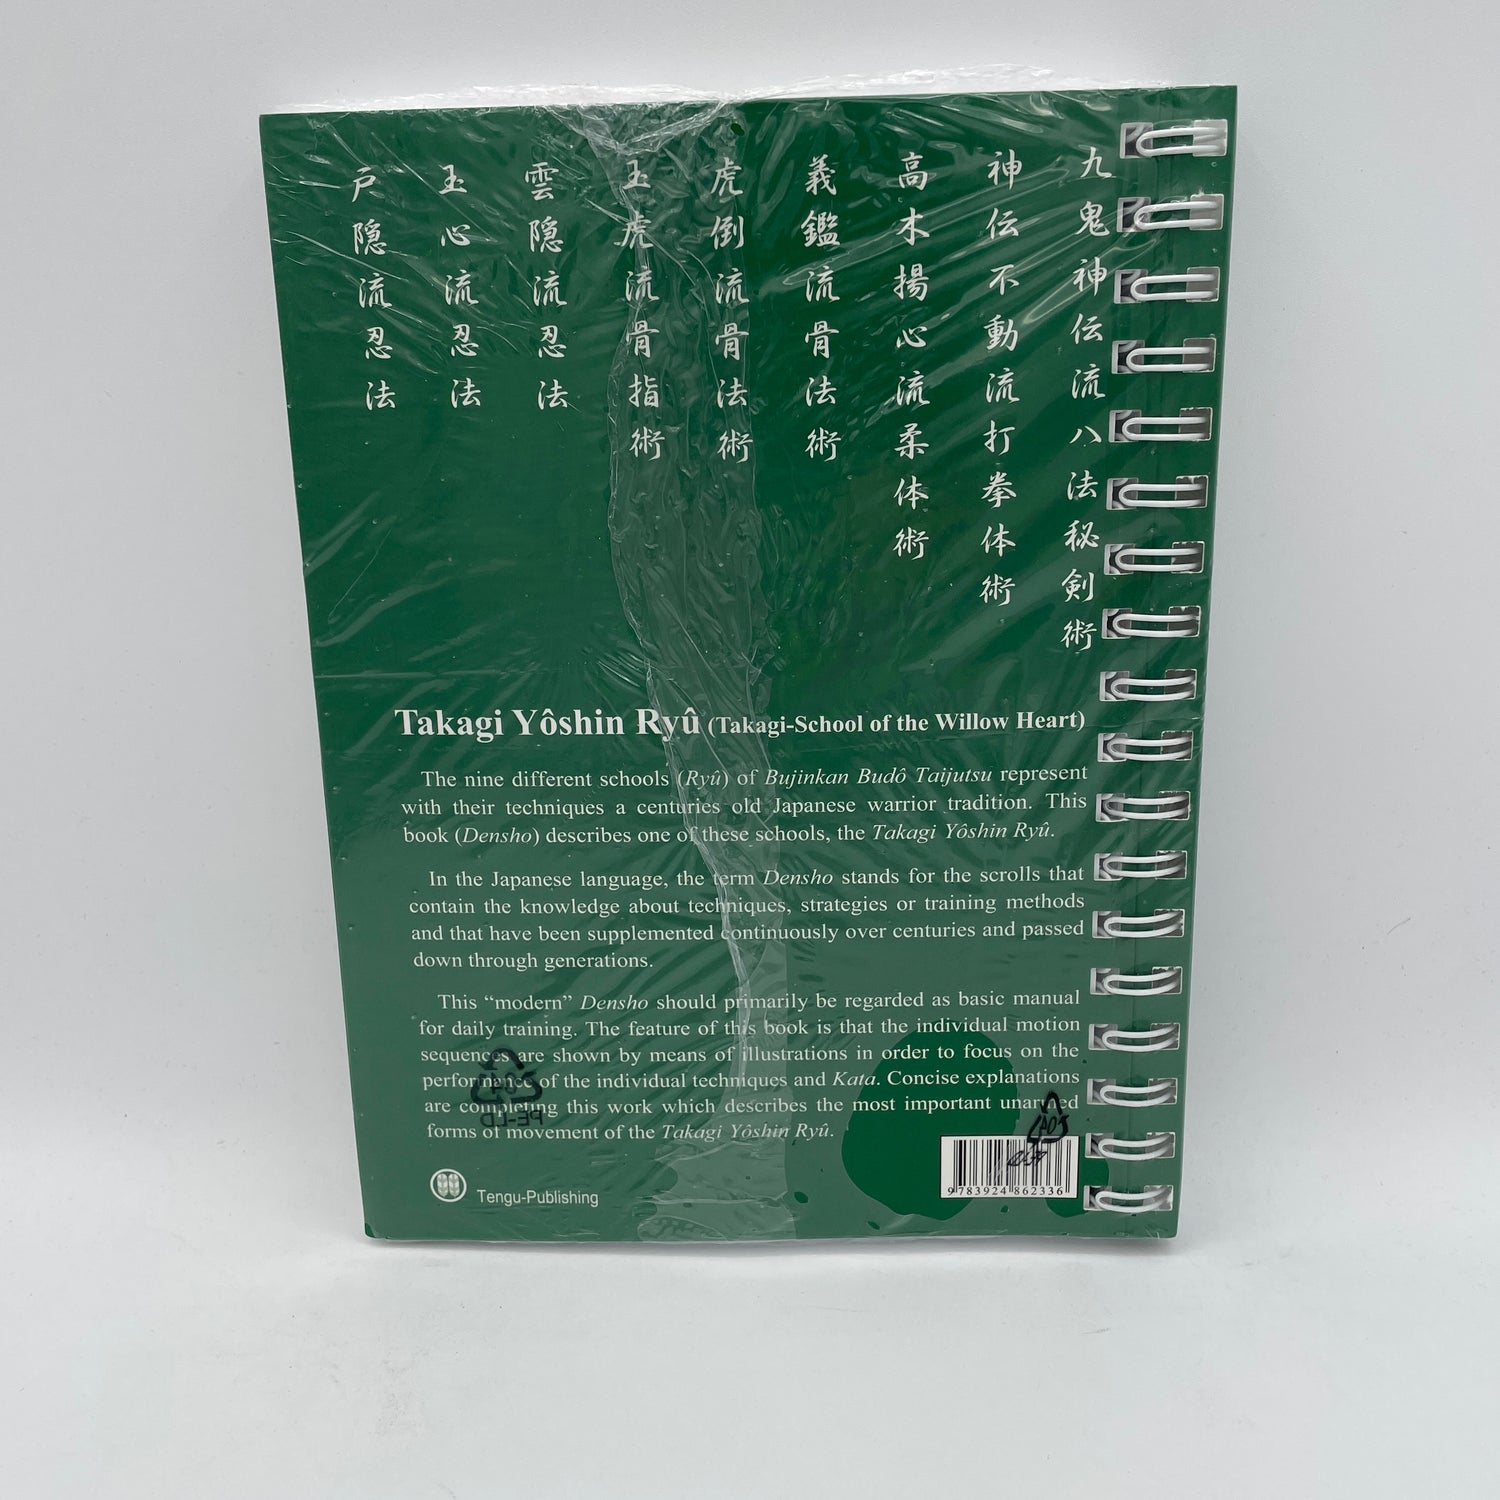 Bujinkan Budo Densho Libro 7: Takagi Yoshin Ryu por Carsten Kuhn